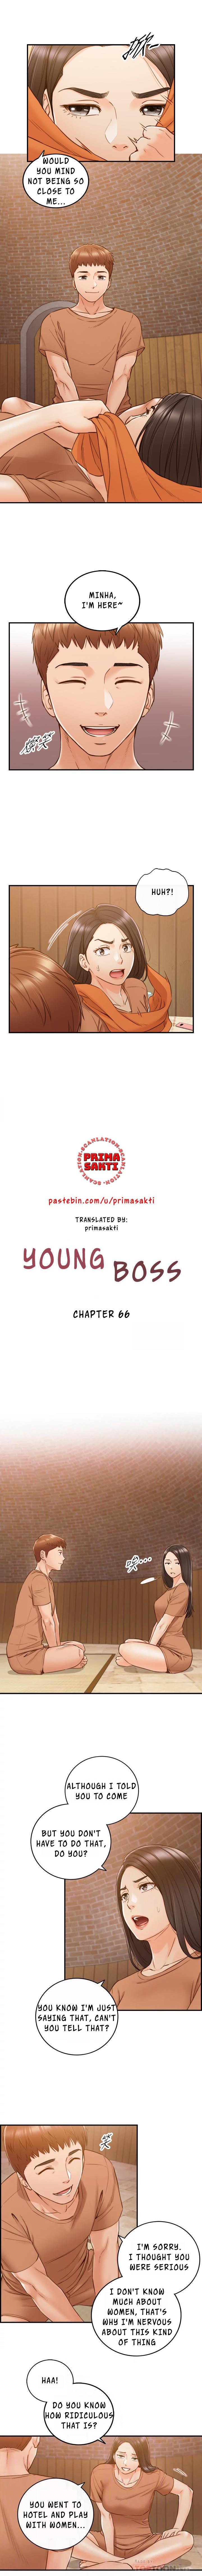 Young Boss Manhwa 01-73 525